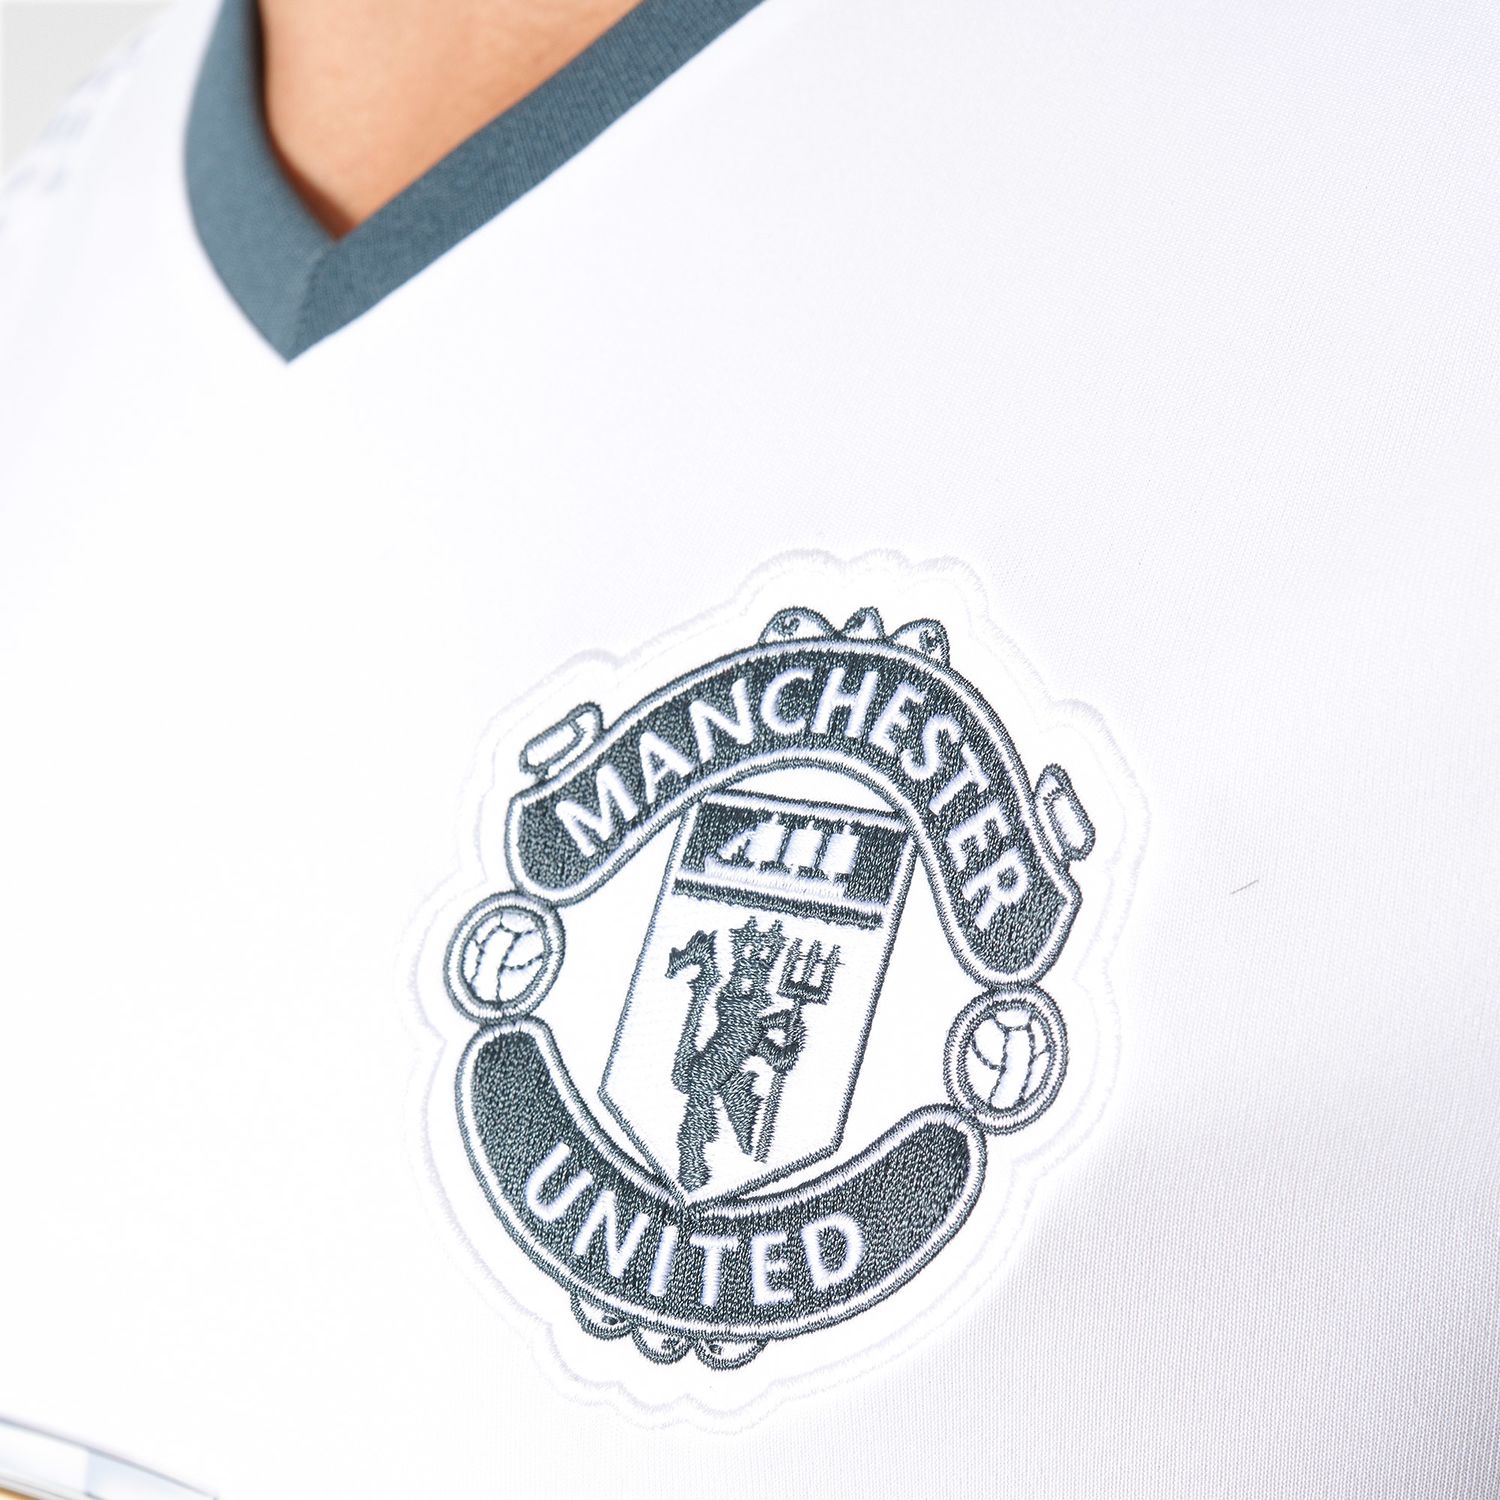 Fervent Grijp Ten einde raad Men's Manchester United Away Jersey 2016-17